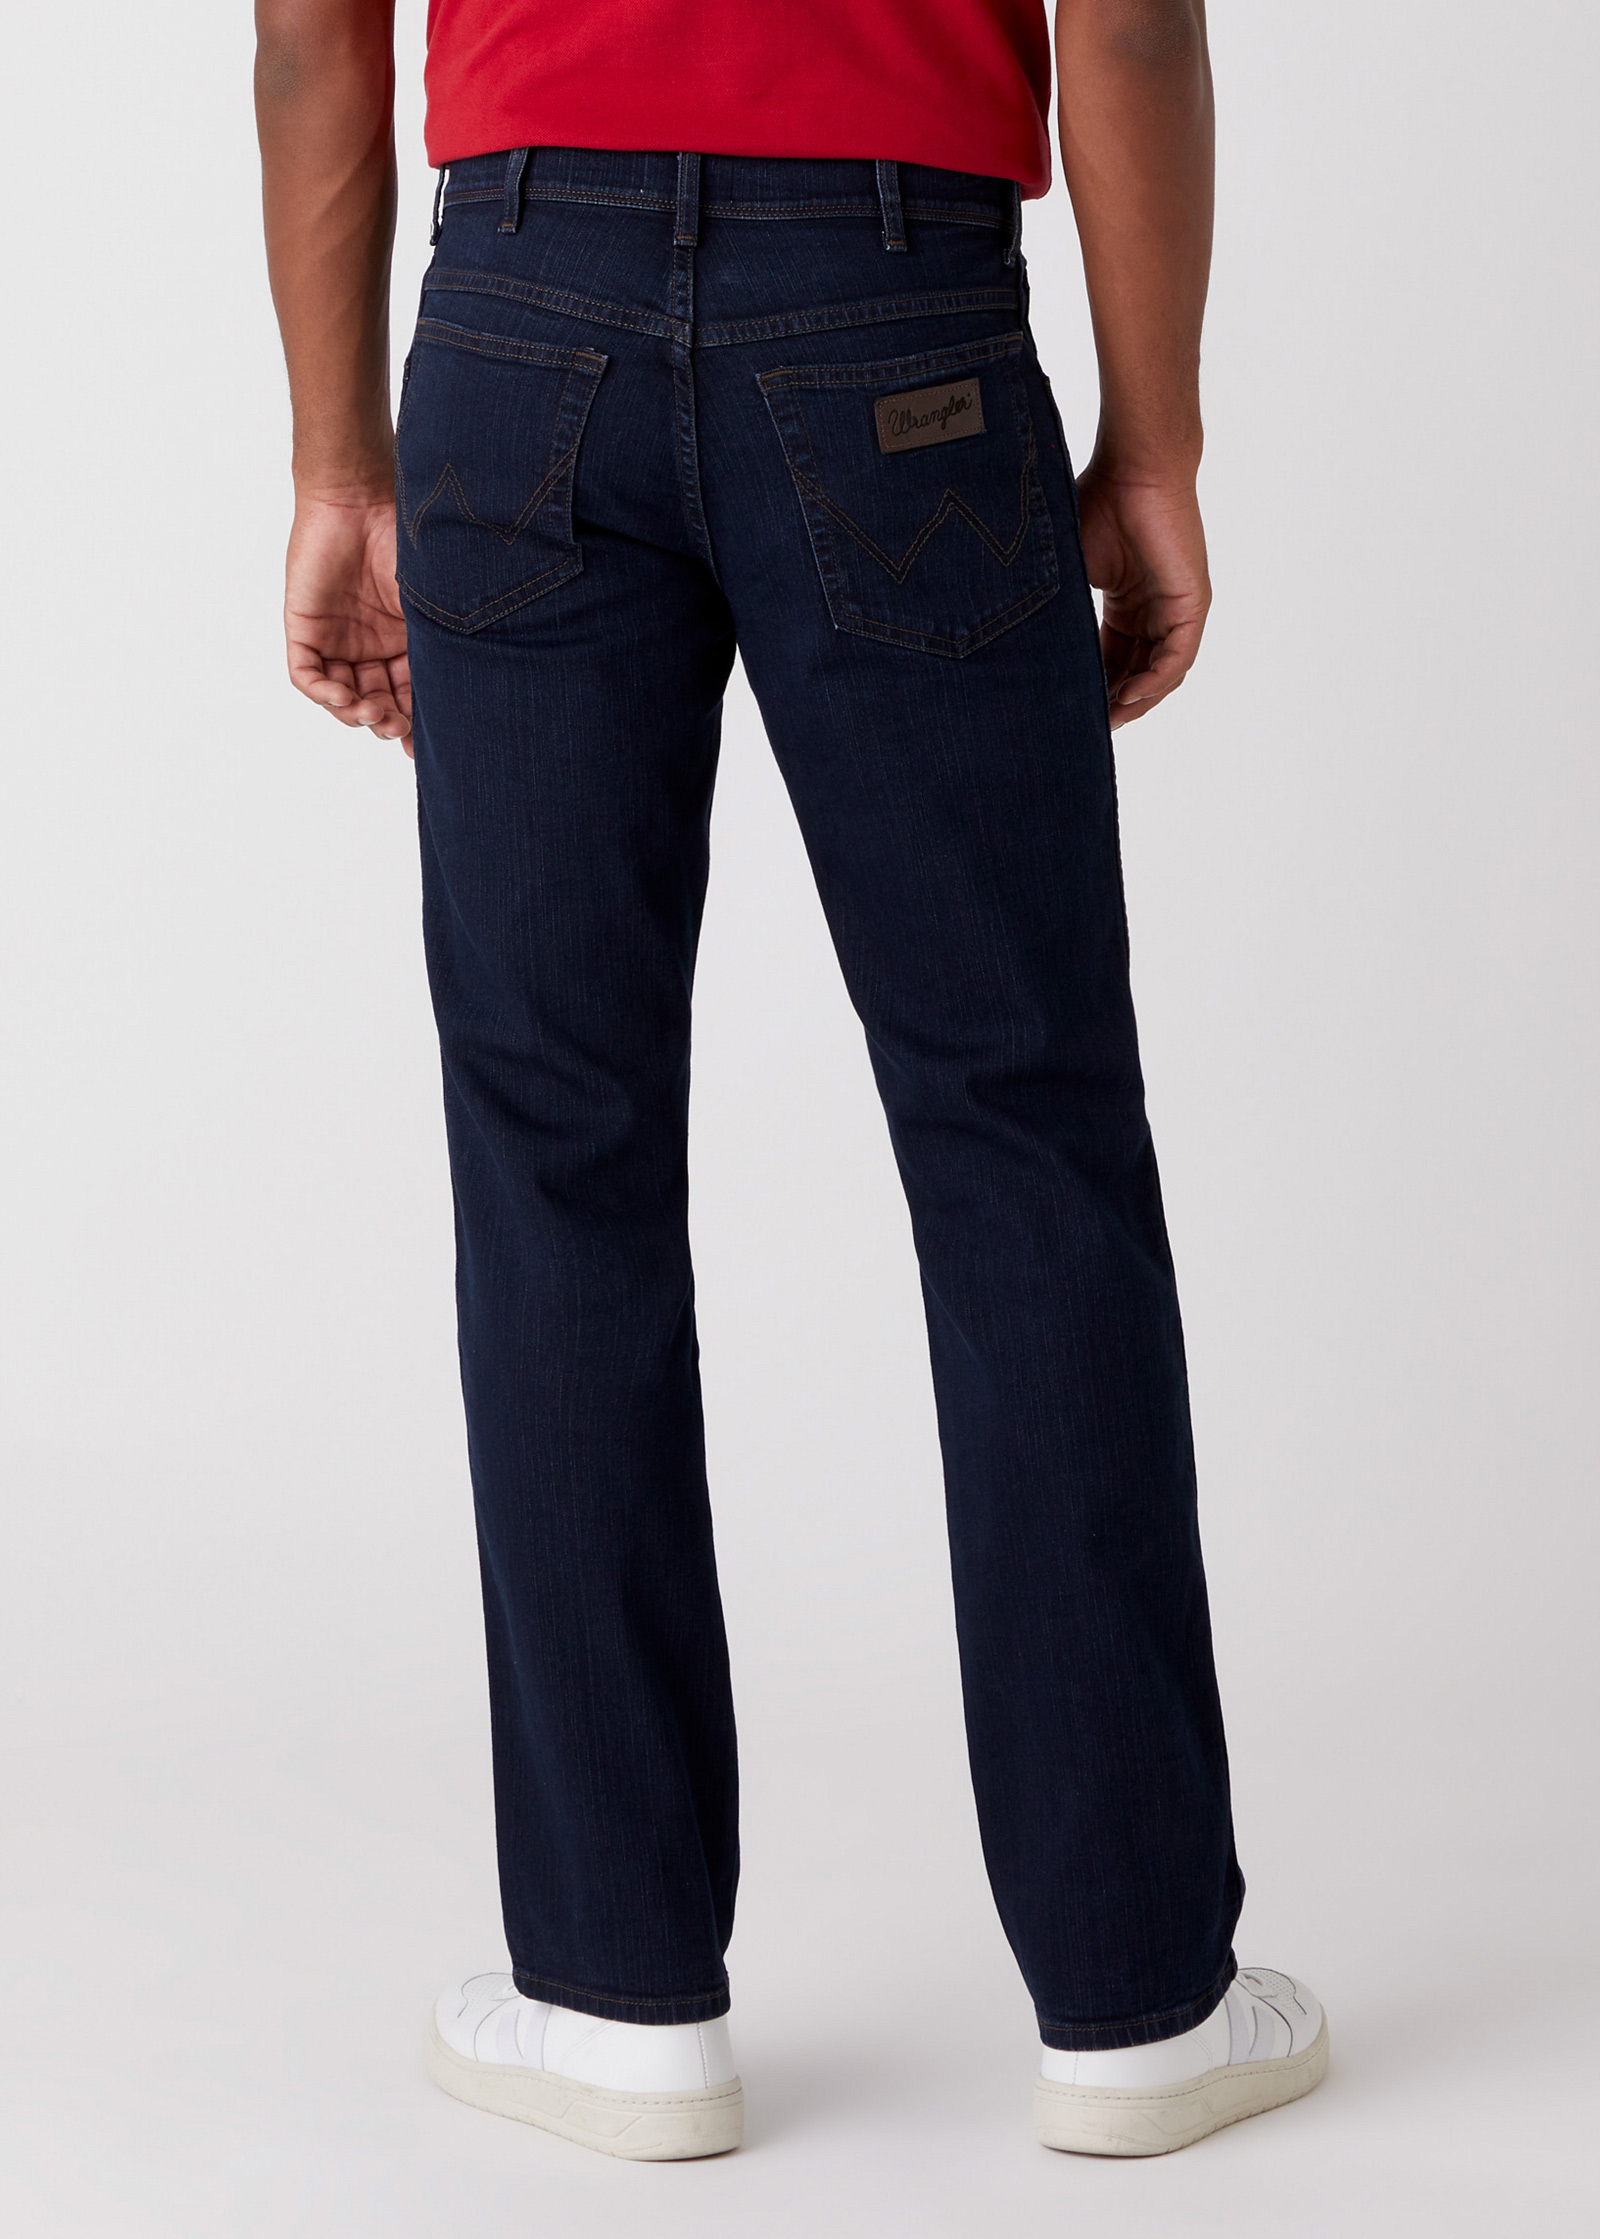 Wrangler Texas Stretch Jeans Denim Pants Blue Black W12175001 Blue Original Dark 